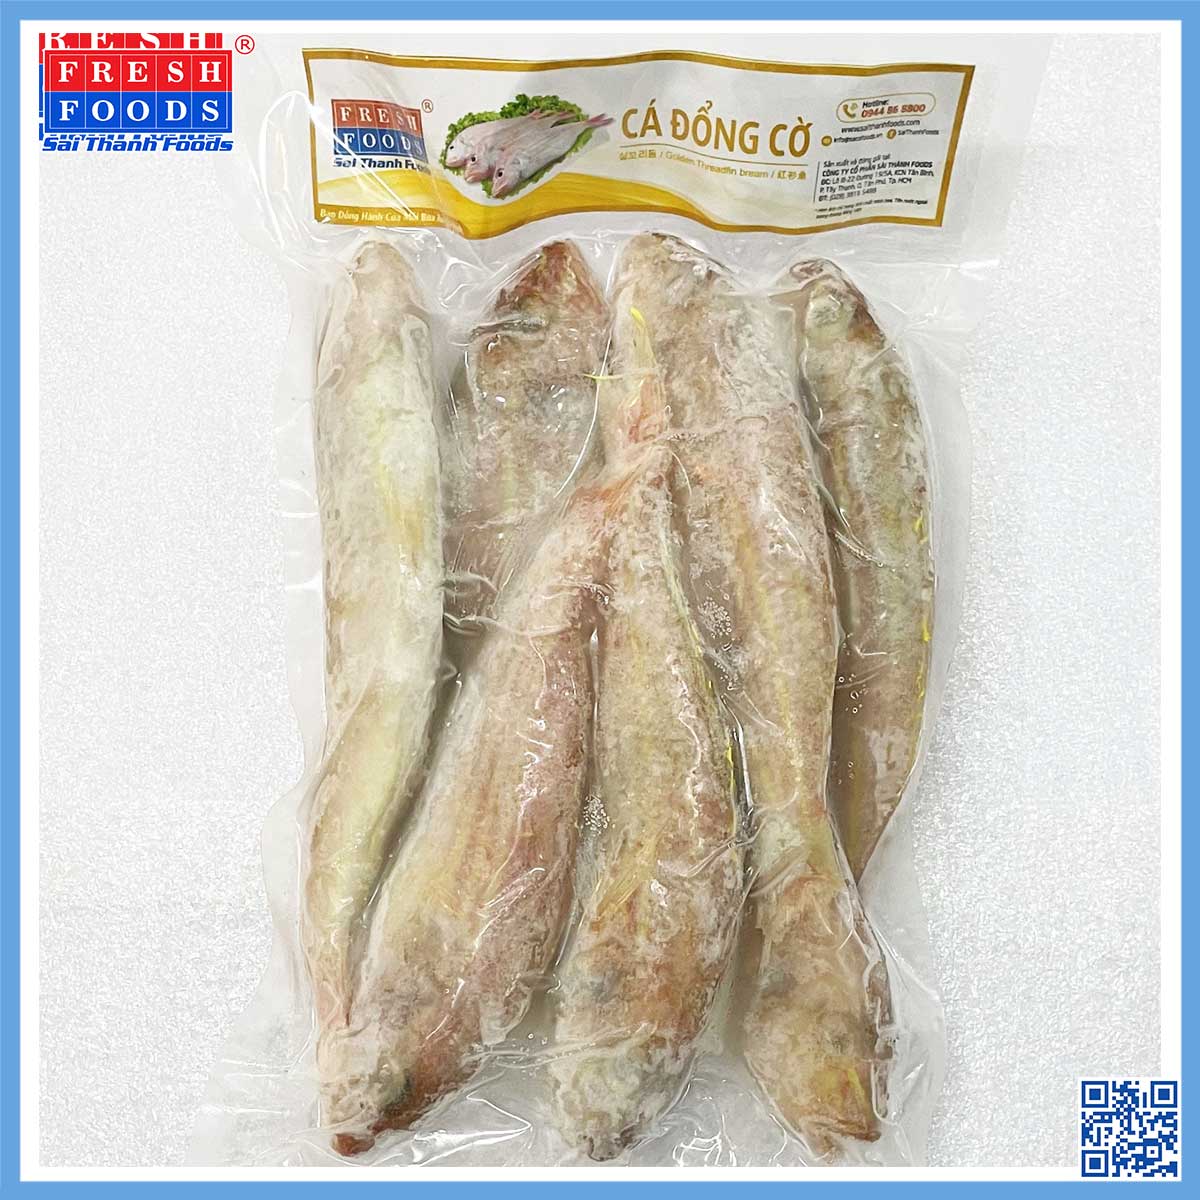 Cá cờ đồng - Thủy Hải Sản Sài Thành Foods - Công Ty Cổ Phần Sài Thành Foods